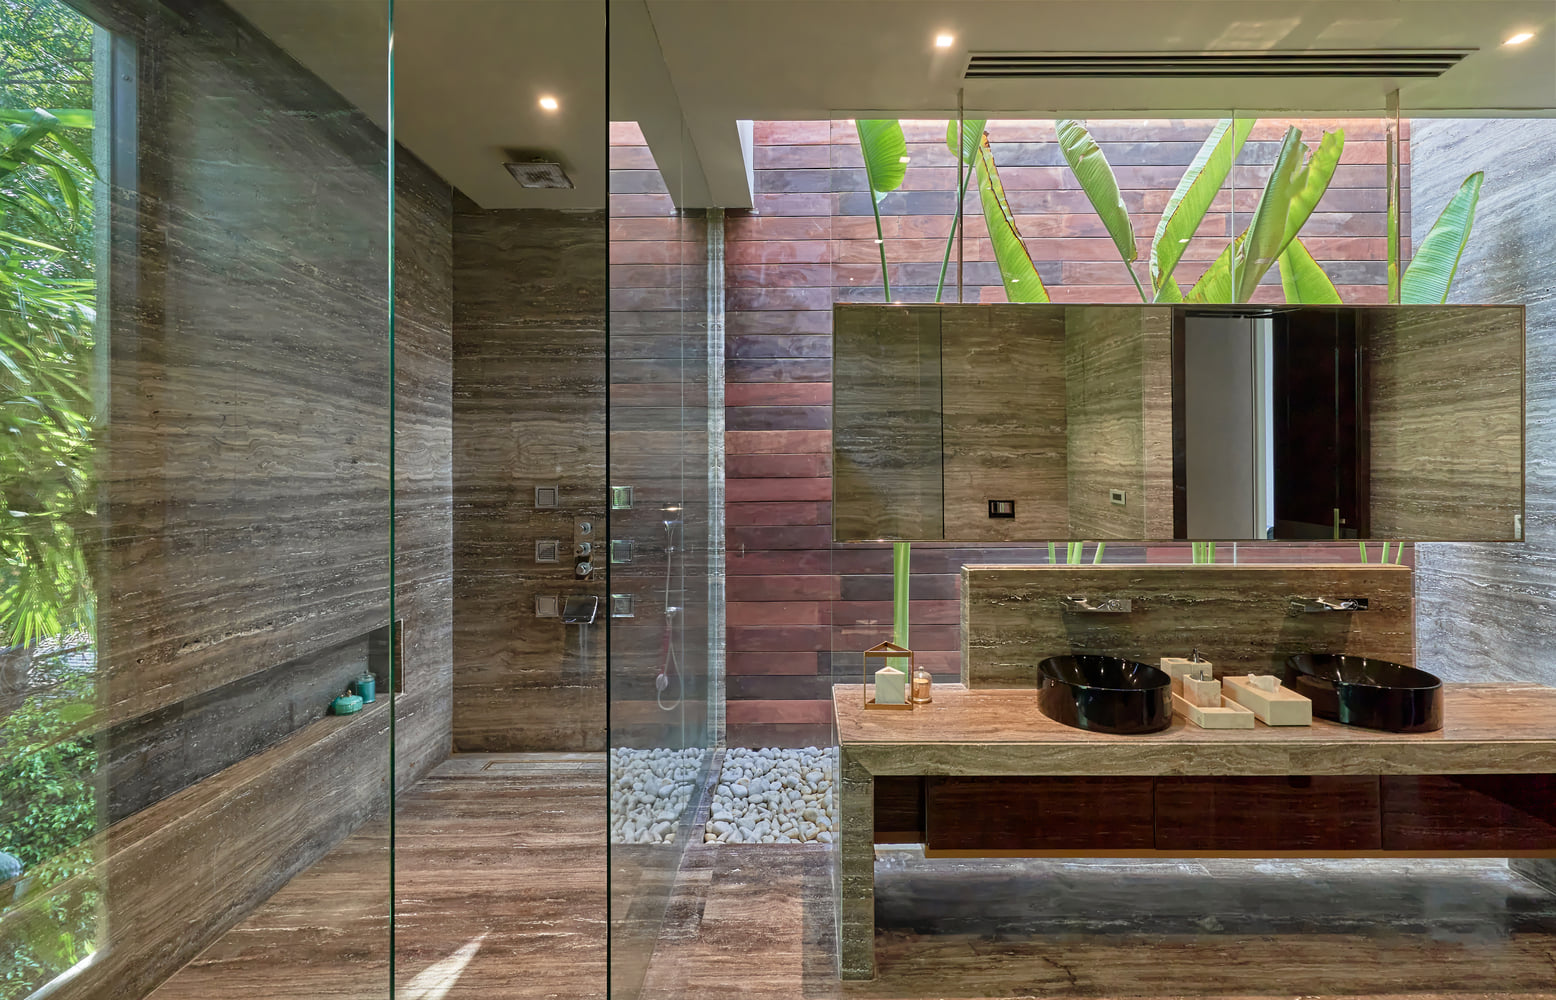 Không gian nhà tắm với sự kết hợp của hệ thống cây xanh tươi mát cùng các đồ dùng nội thất được làm từ chất liệu thiên nhiên. Qua từng giọt nắng rơi vào khung cửa, không gian nhà tắm như được bao bọc bởi khu vườn nhiệt đới xanh tốt với đủ đầy các màu sắc